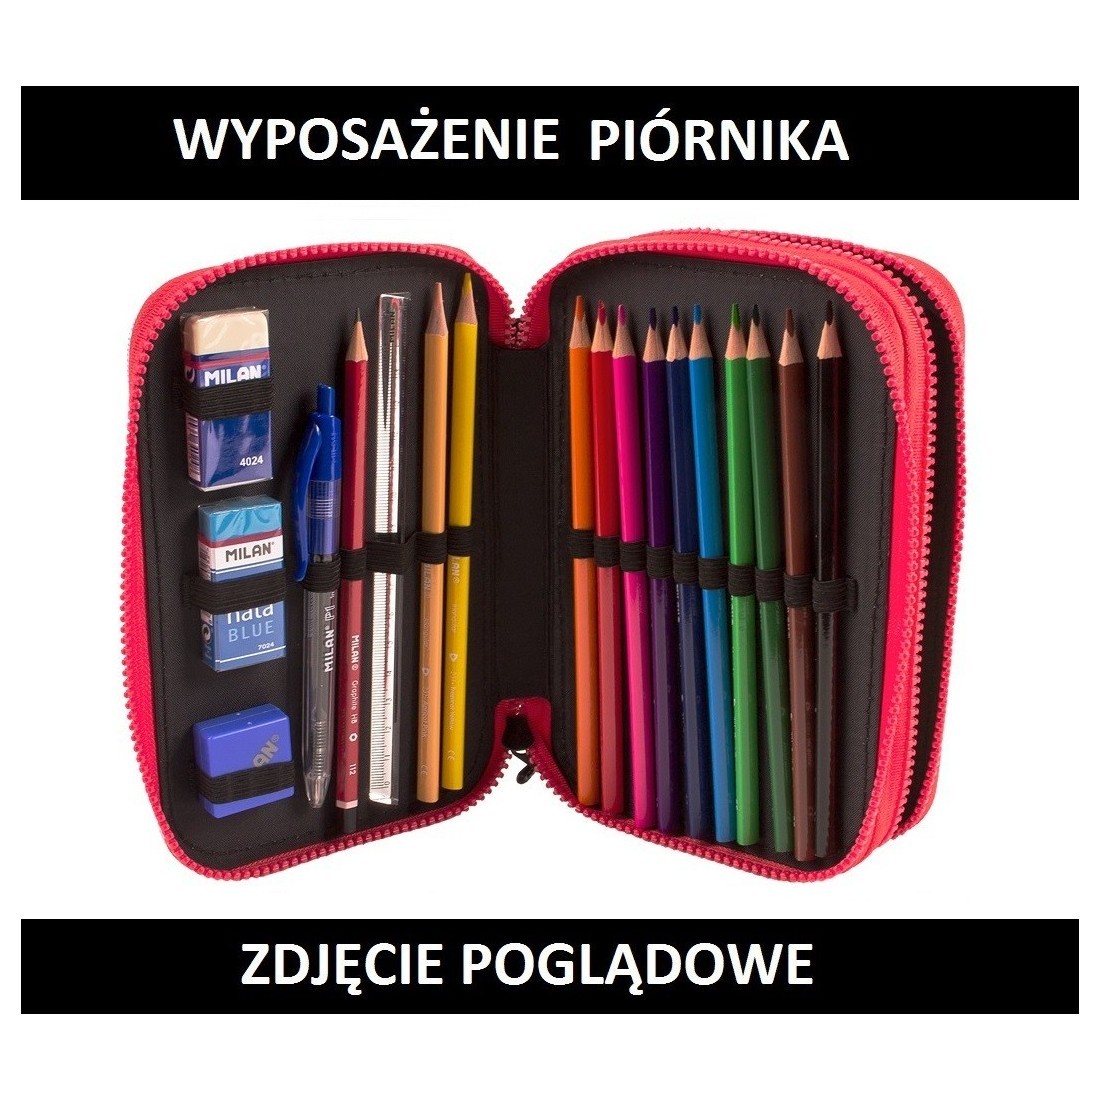 Piórnik MILAN MINIO dwa zamki z wyposażeniem, potworek na miętowym tle - plecak-tornister.pl